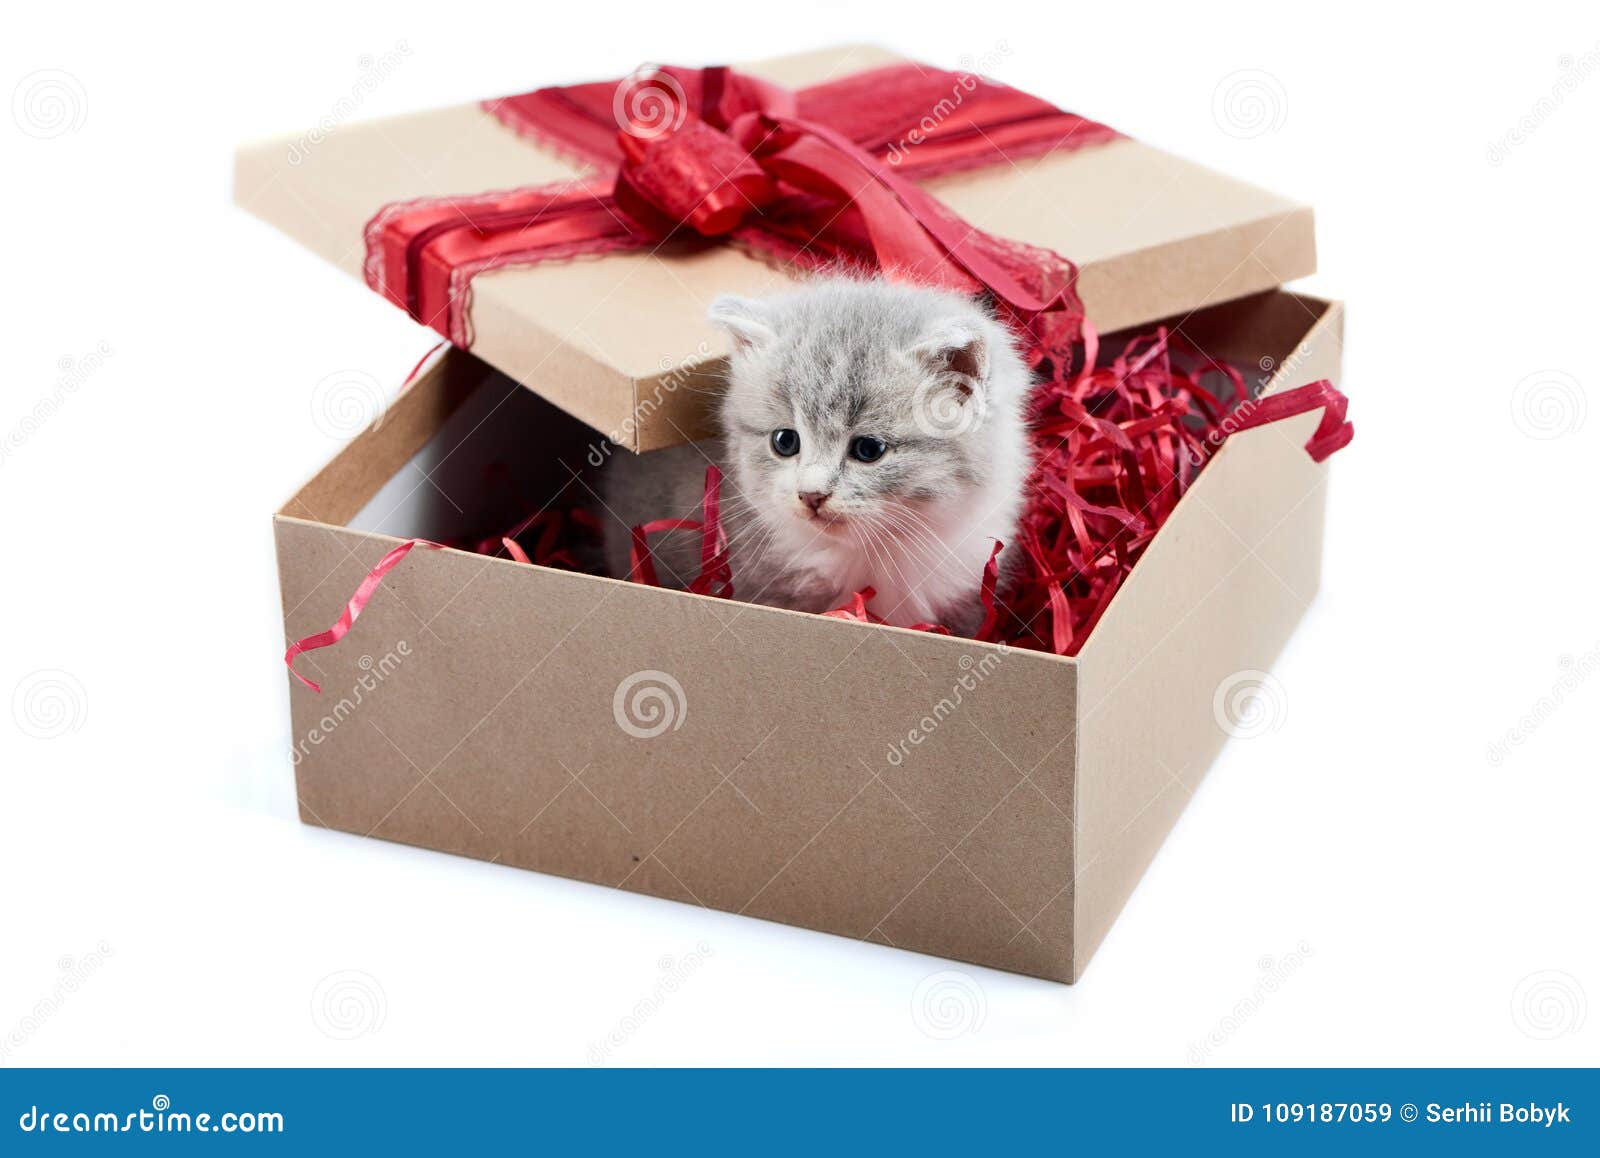 Μικρό χαριτωμένο χνουδωτό διακοσμημένο γατάκι κουτί από χαρτόνι που είναι παρόν για την ειδική περίπτωση